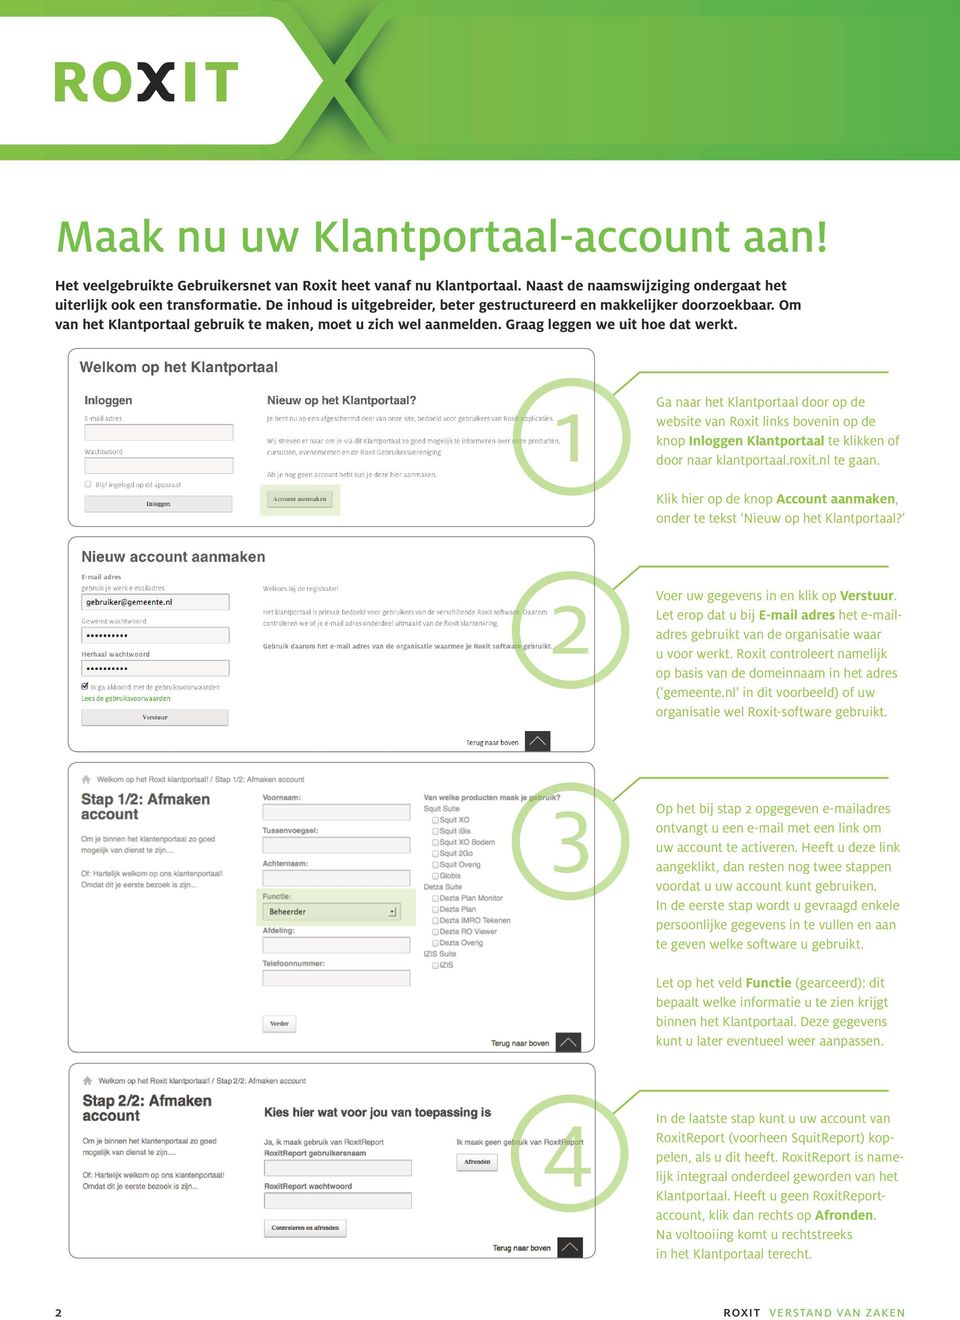 1 Ga naar het Klantportaal door op de website van Roxit links bovenin op de knop Inloggen Klantportaal te klikken of door naar klantportaal.roxit.nl te gaan.